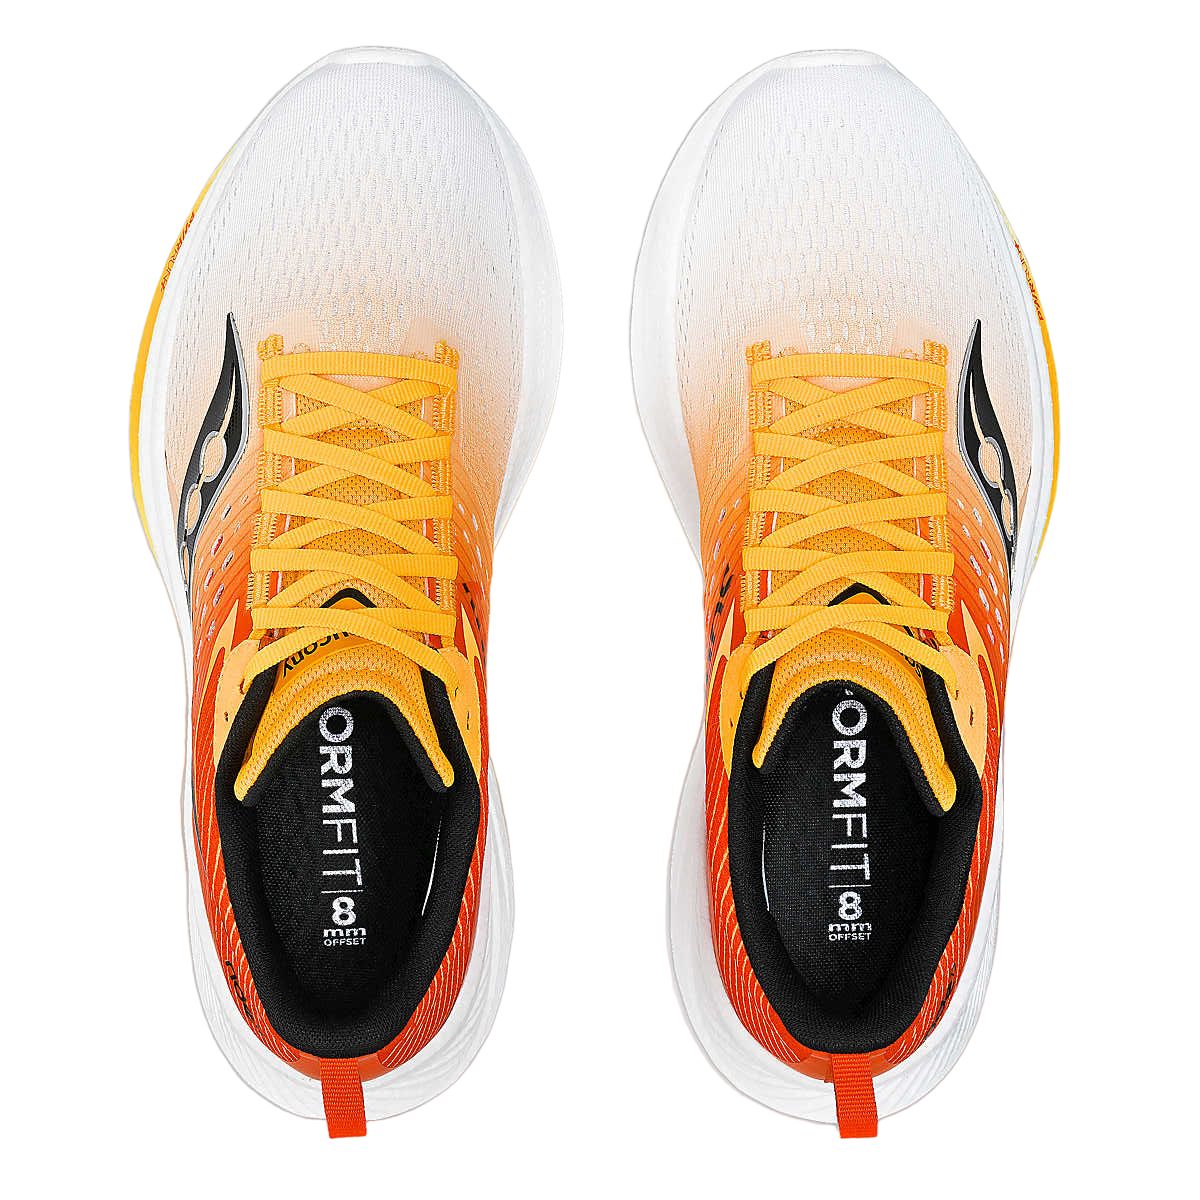 Saucony scarpa da corsa da uomo Ride 17 S20924-138 bianco giallo oro arancio